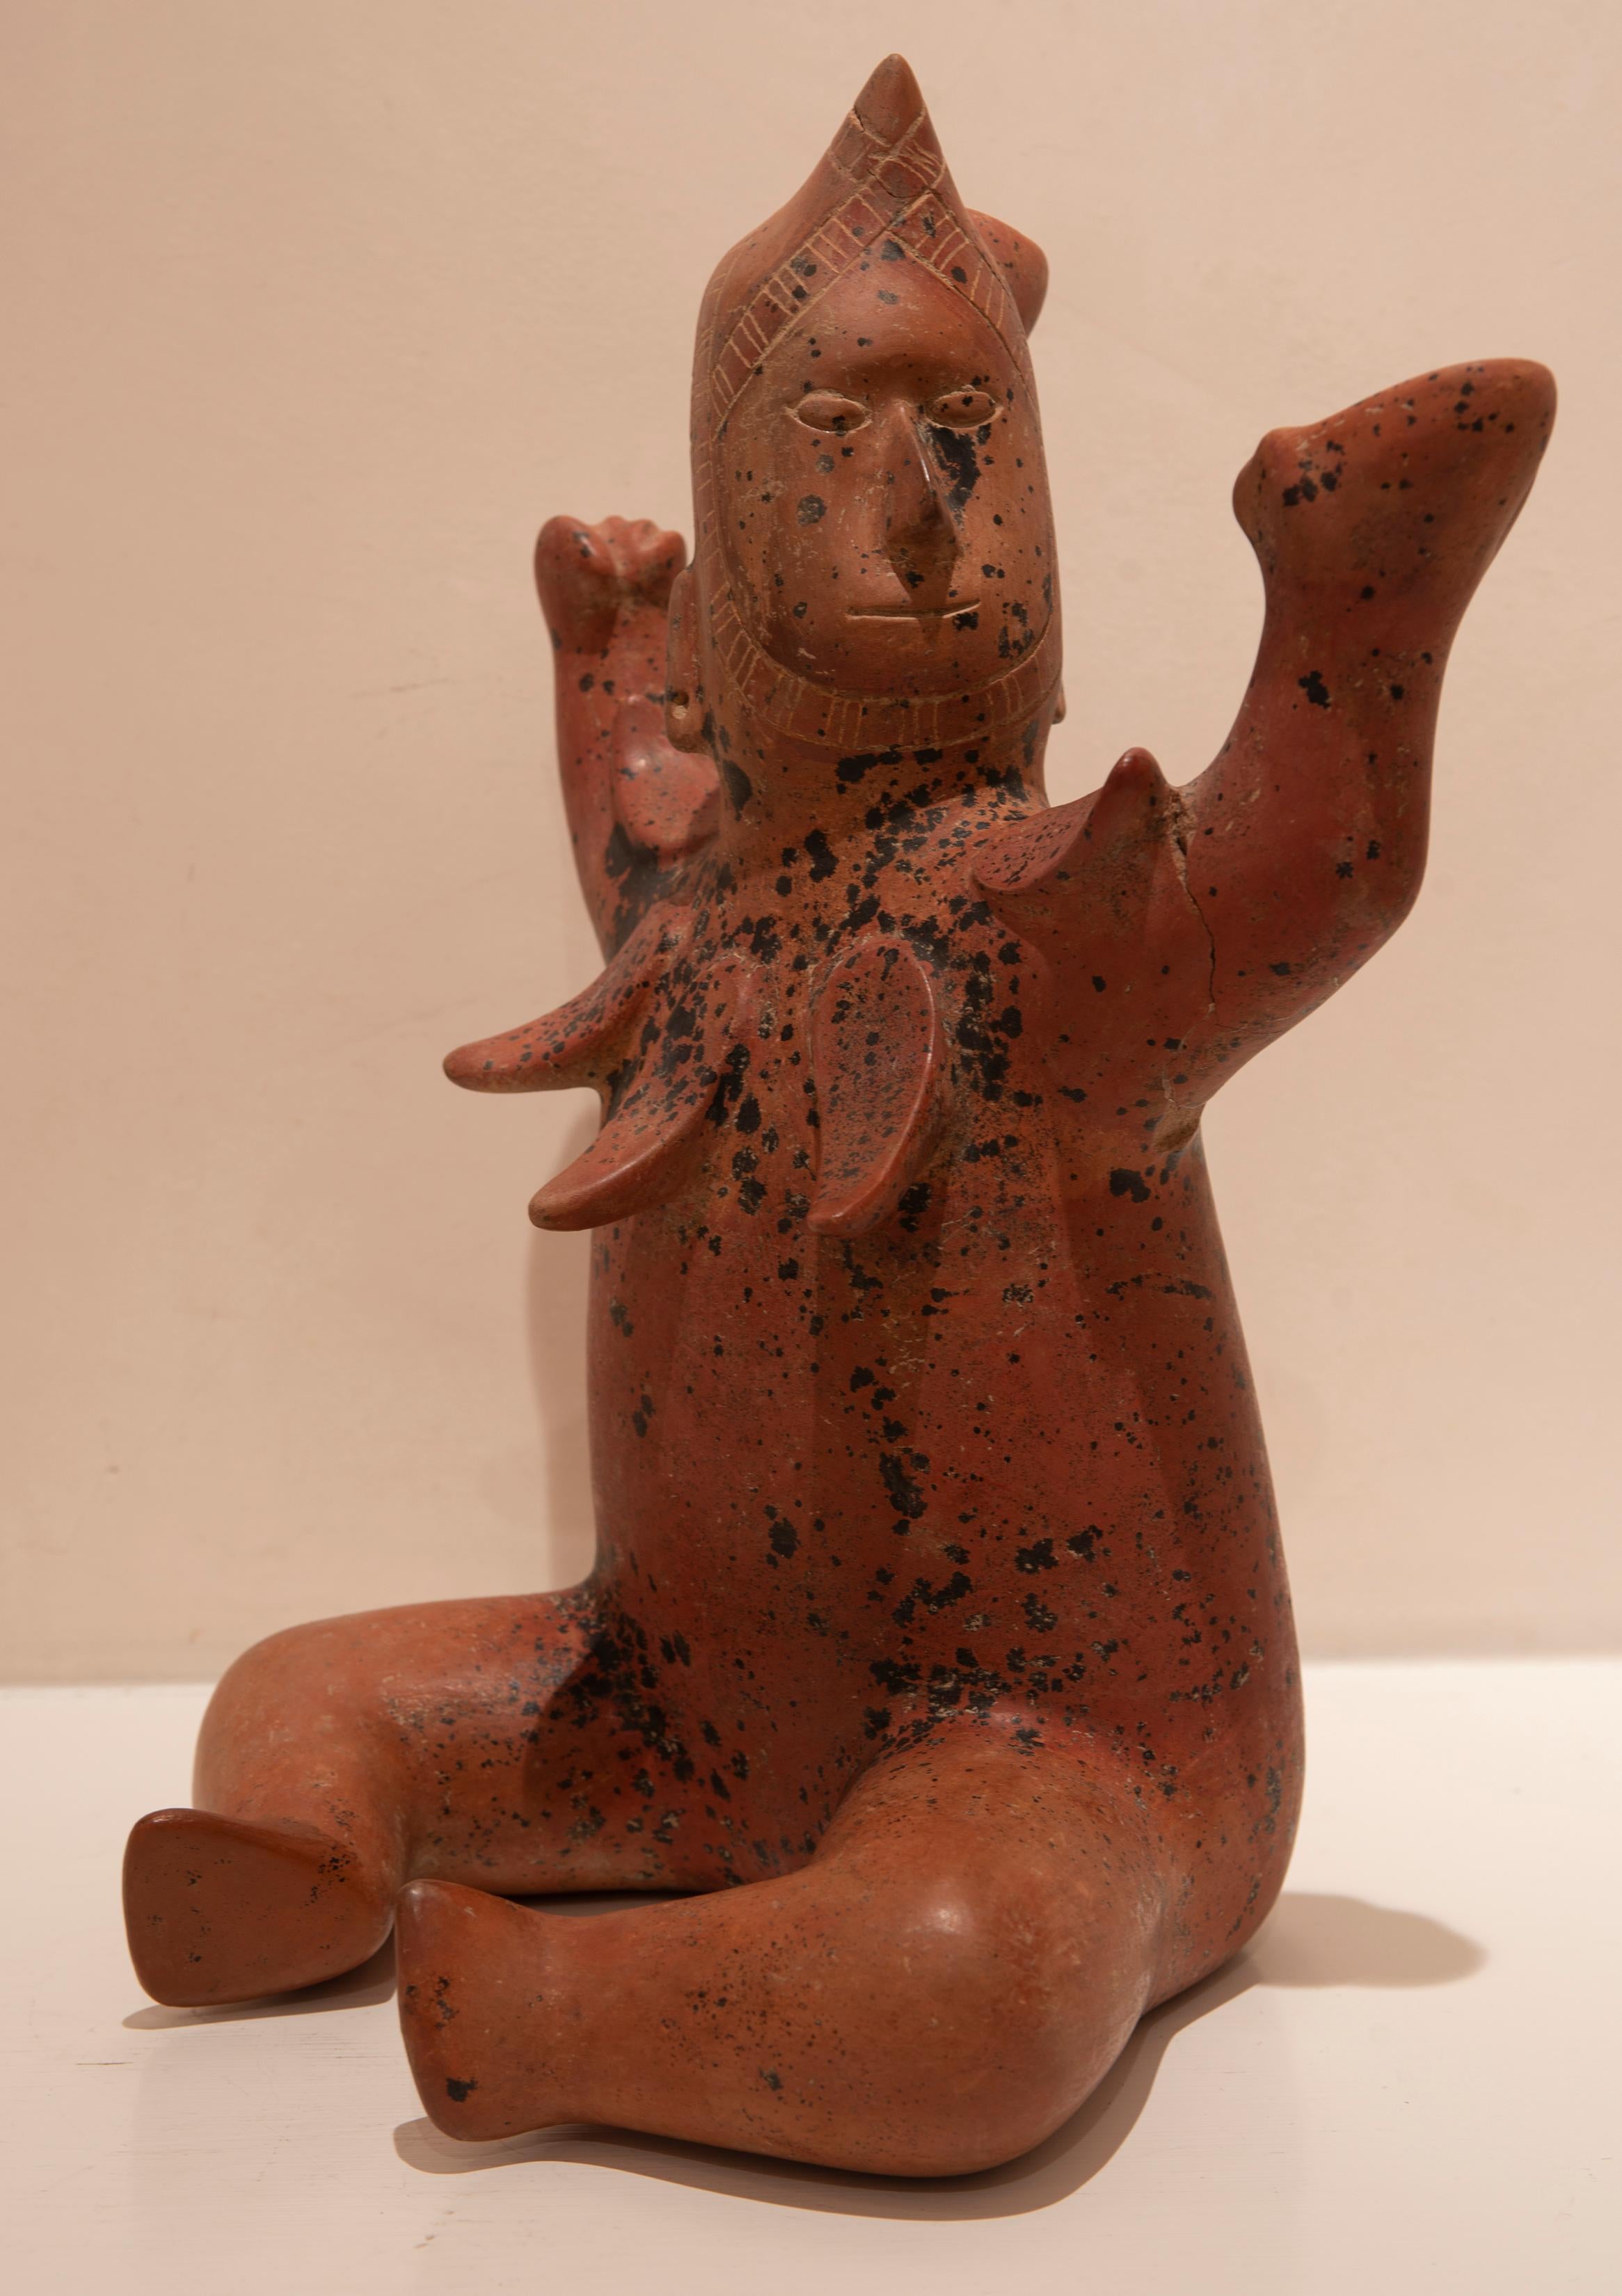 Seated ceramic figure, Colima, MX.